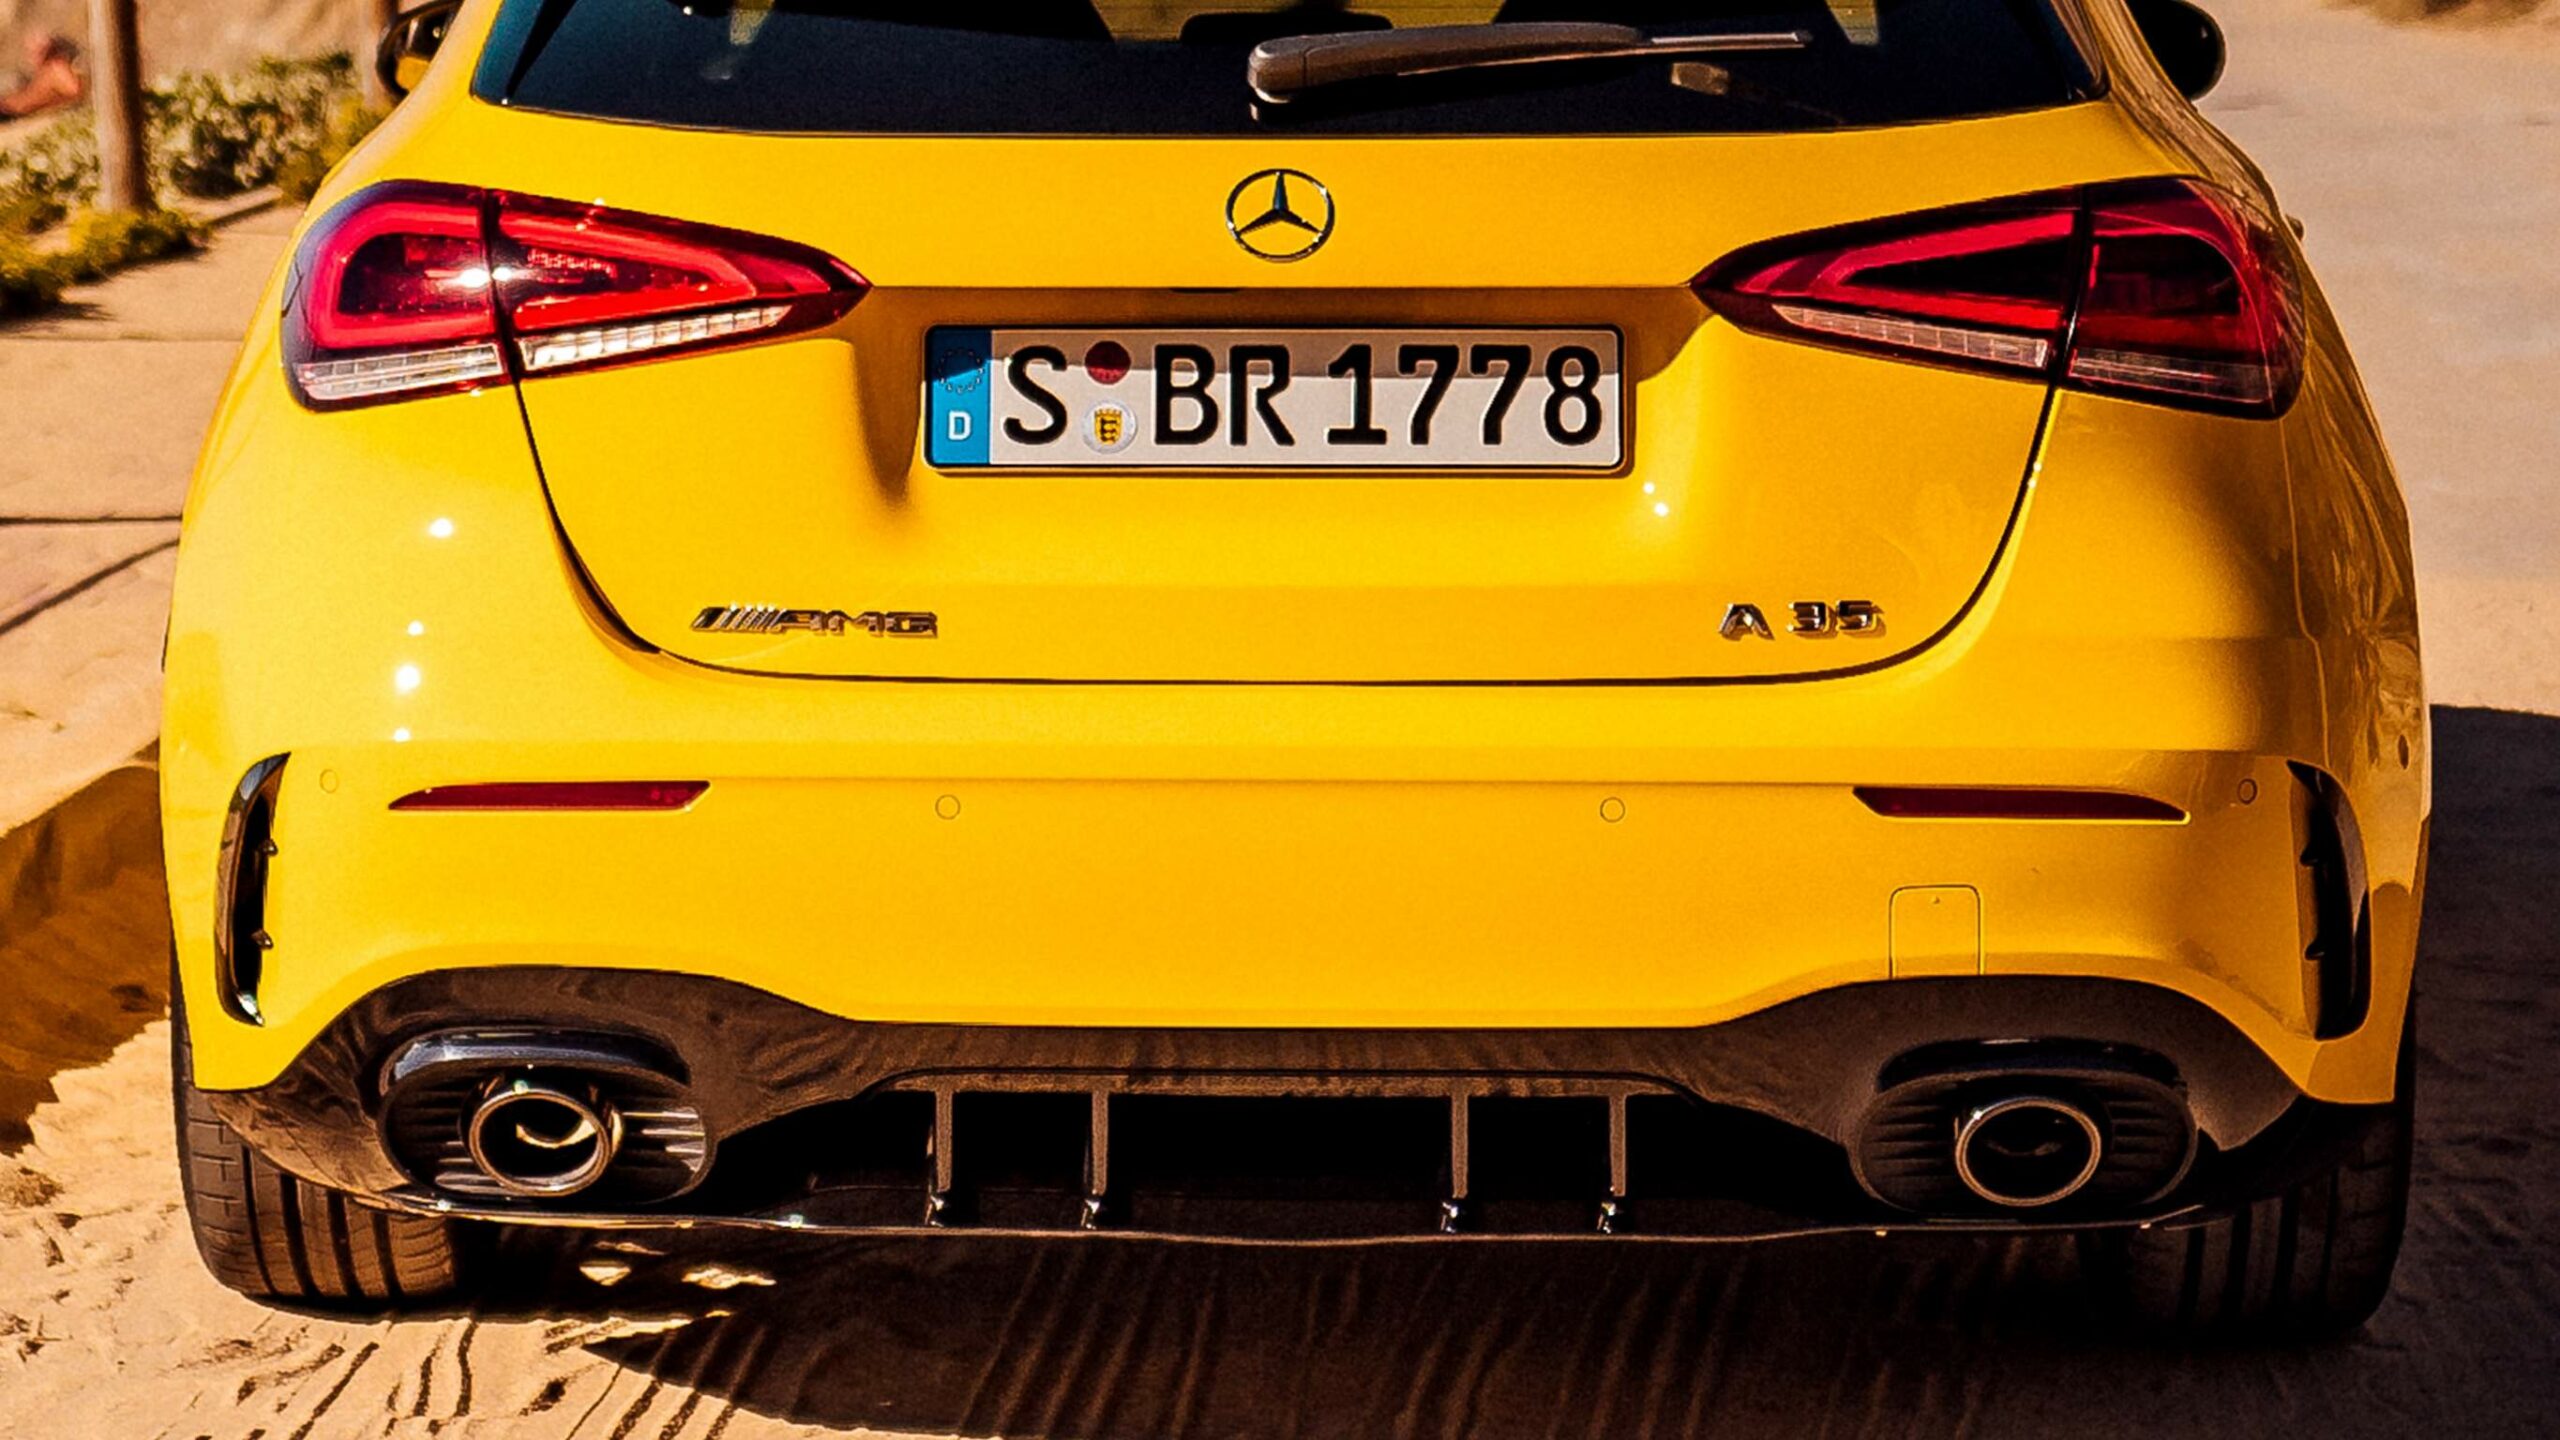 Faldon trasero de la espectacular y deportiva Clase A AMG compacta en color amarillo